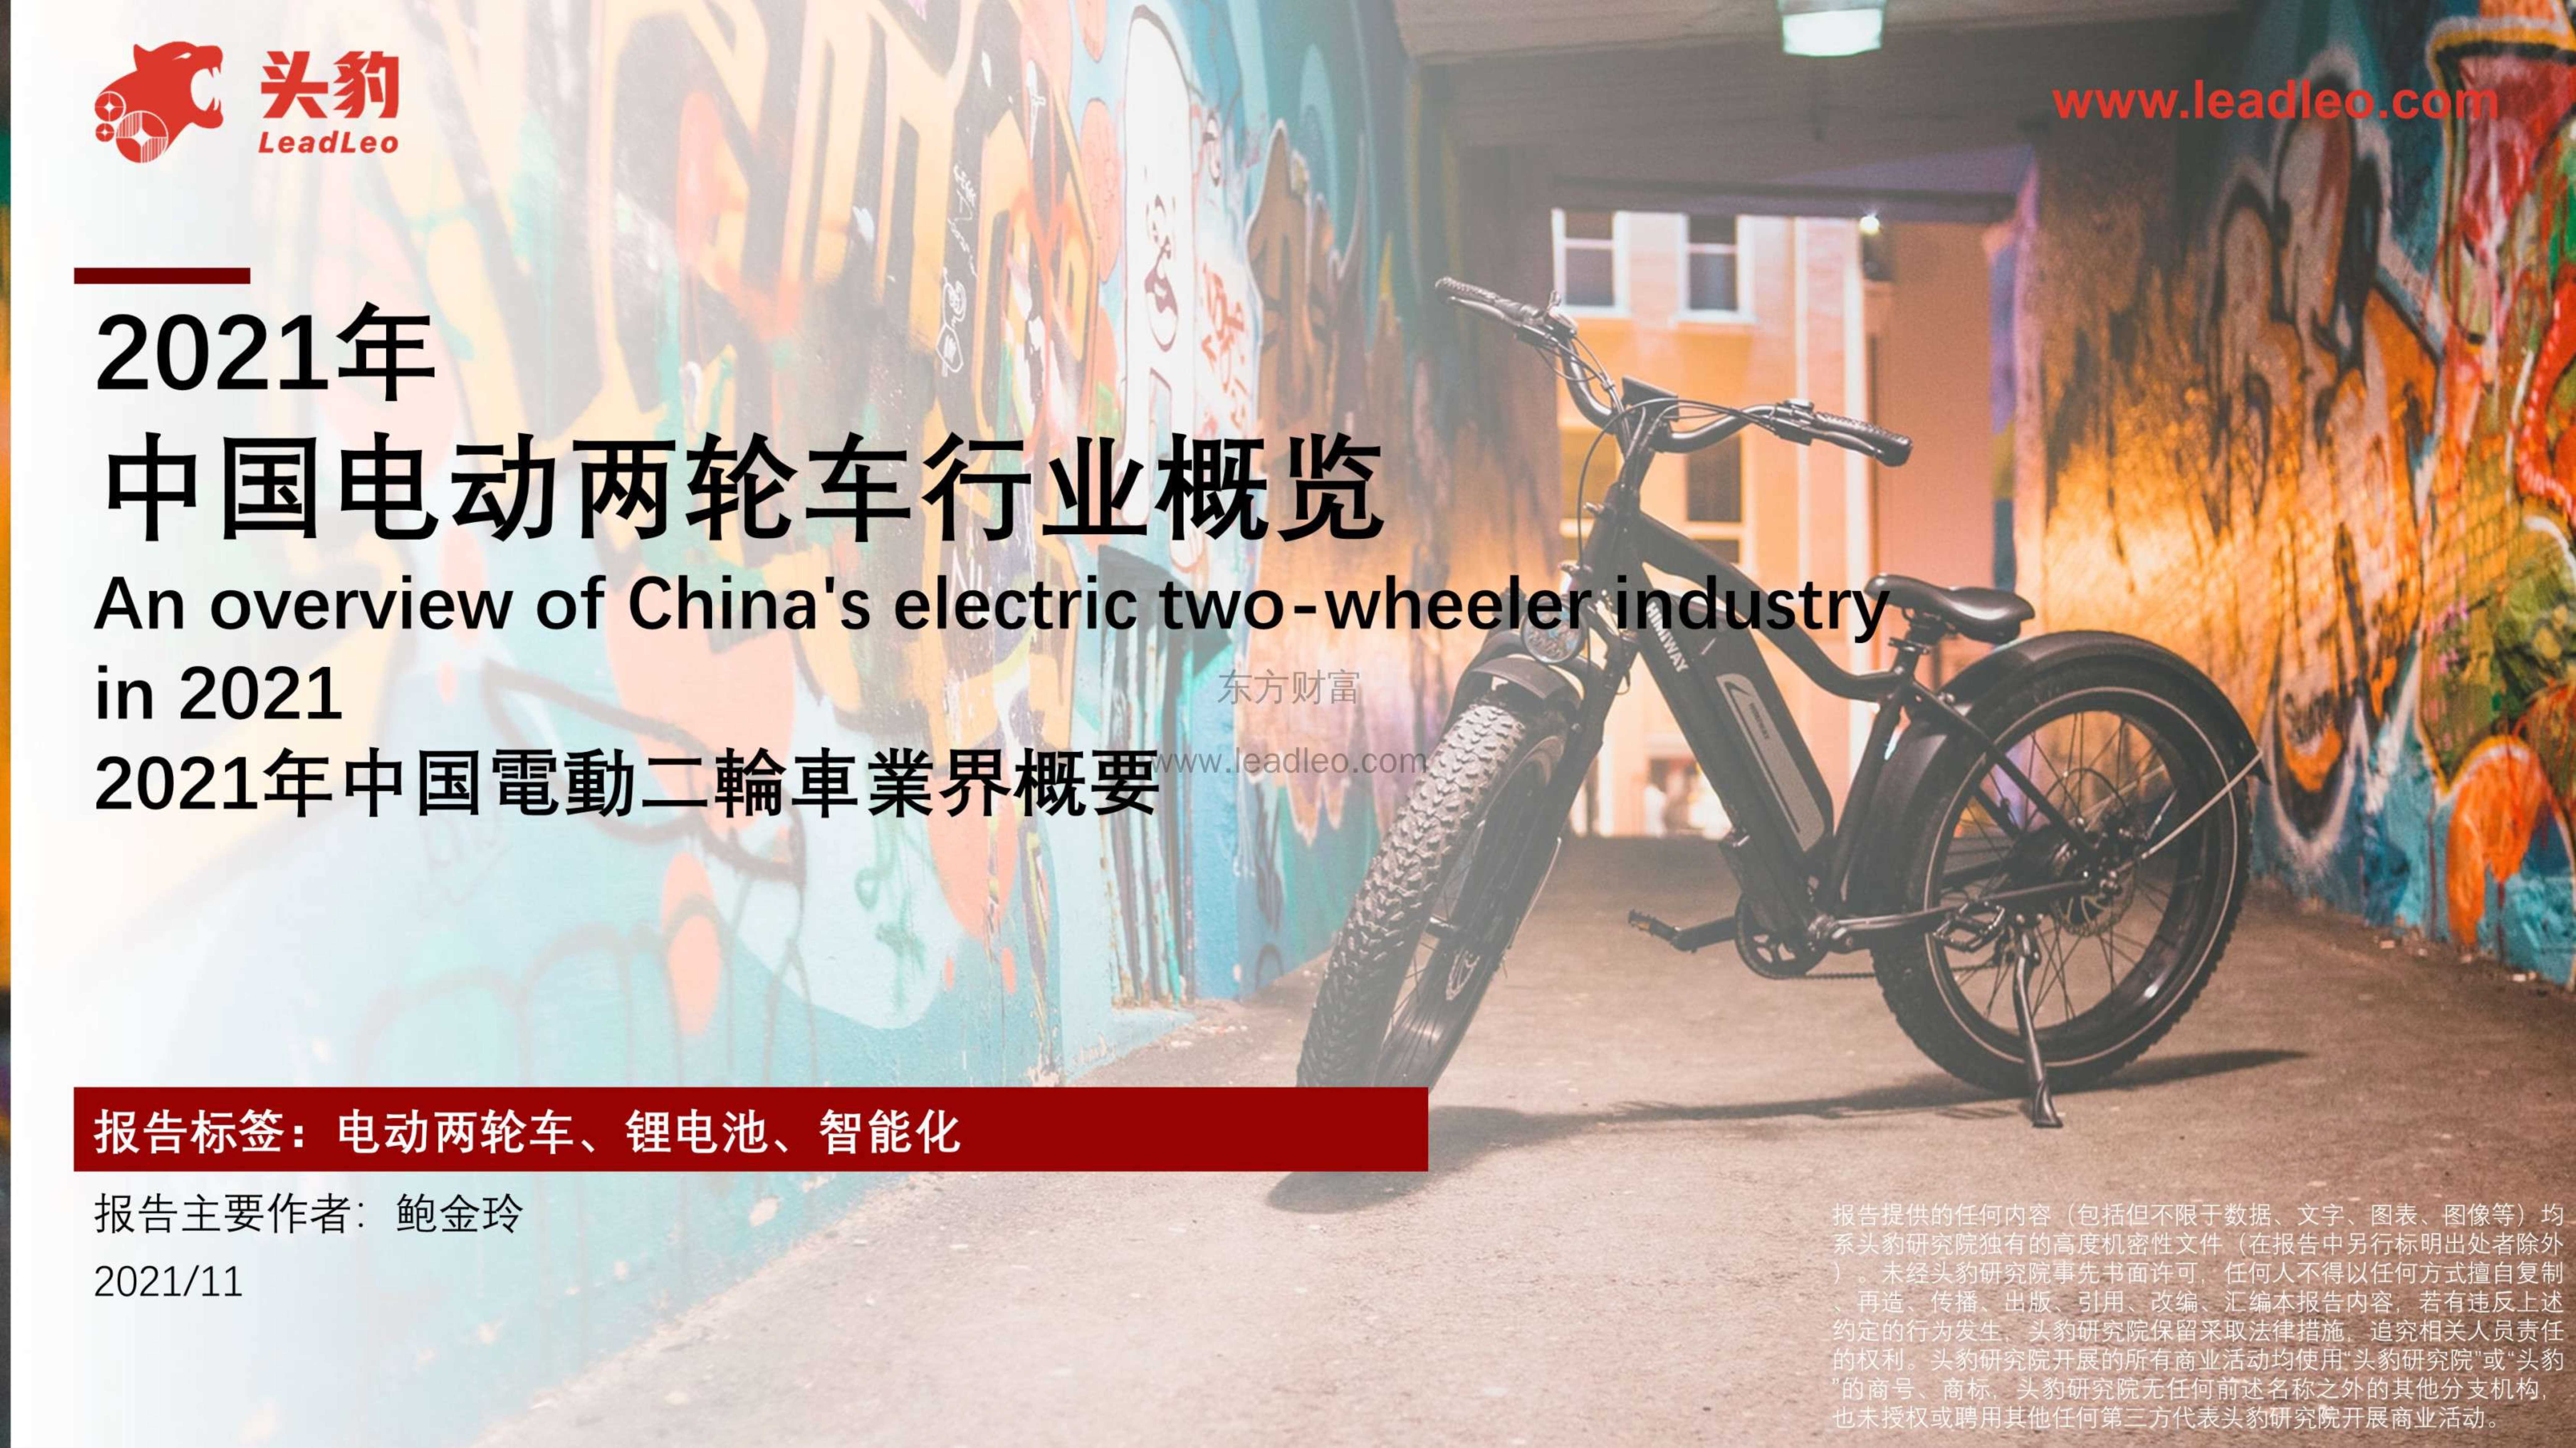 头豹研究院-2021年中国电动两轮车行业概览-2021.12-41页